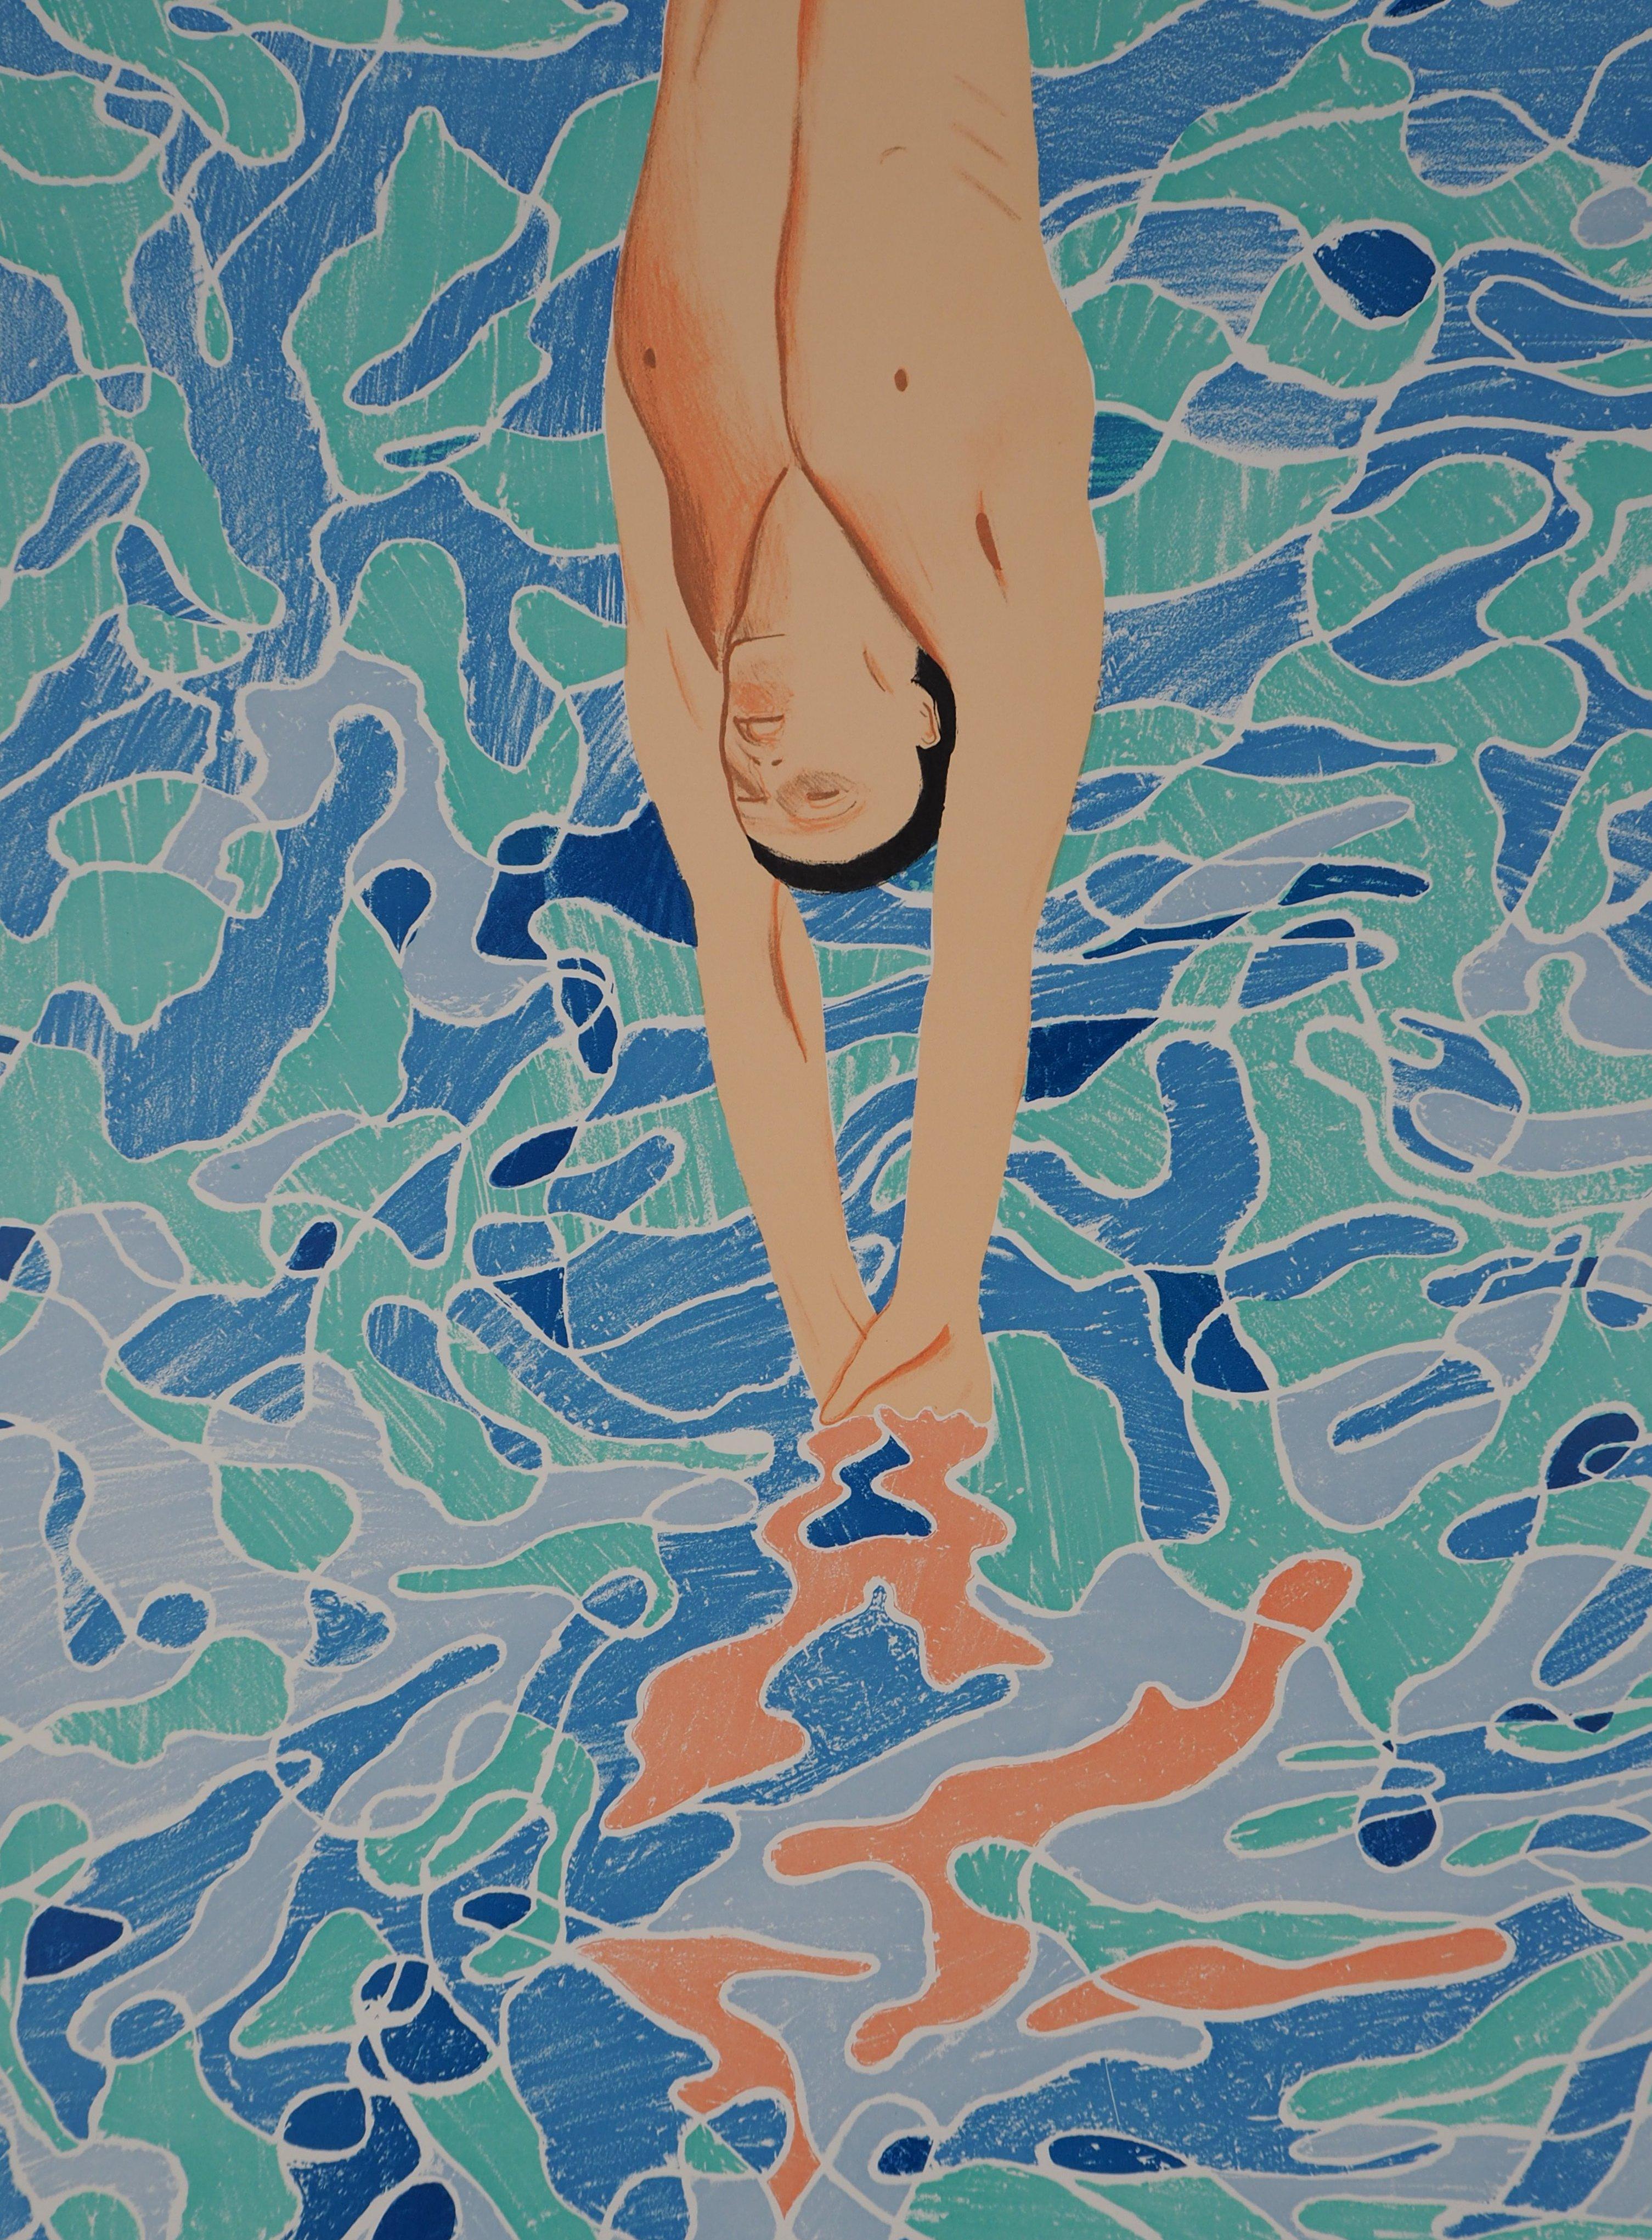 David HOCKNEY
Plongeur en piscine

Lithographie originale
Signature imprimée dans la plaque
Sur papier 101 x 64 cm (c. 40 x 26 inch)
Réalisé pour les Jeux Olympiques de Munich, 1972

Excellent état